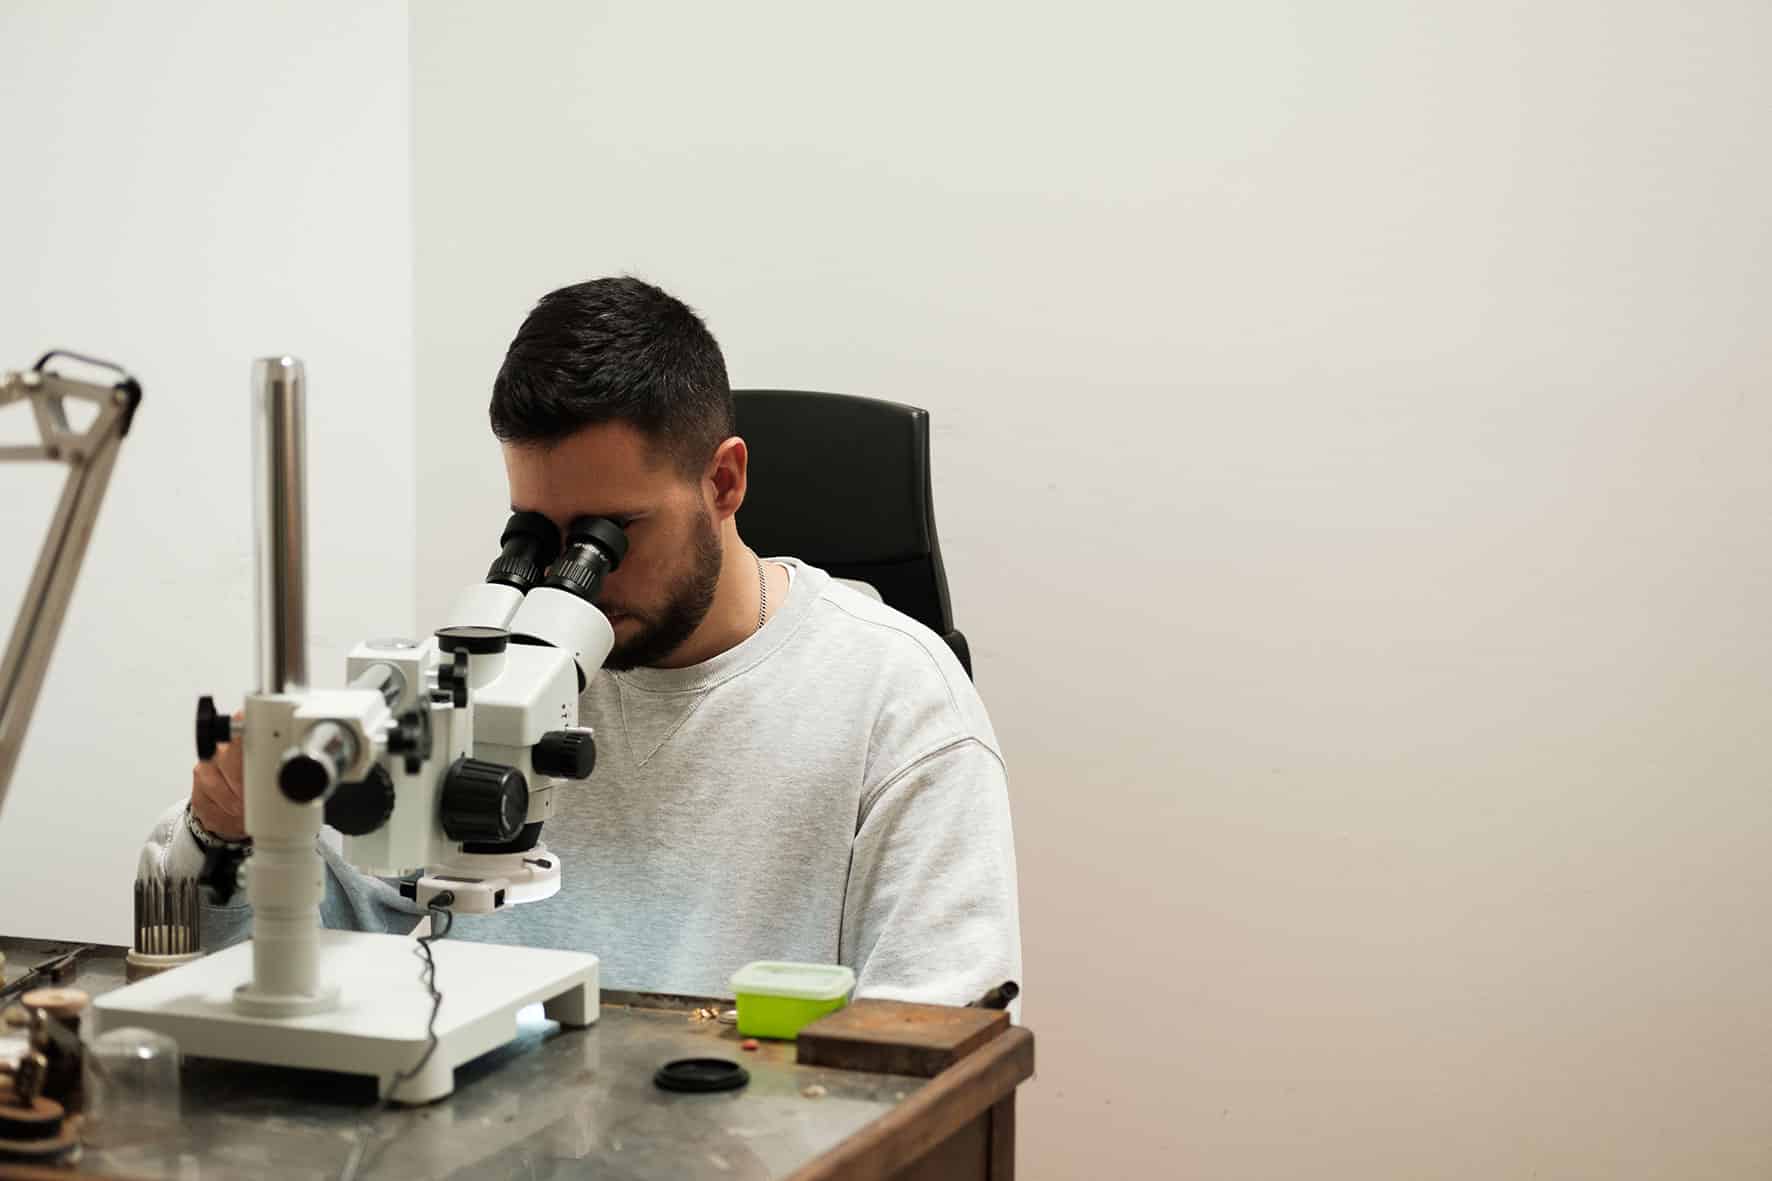 Romeu looks through the microscope.